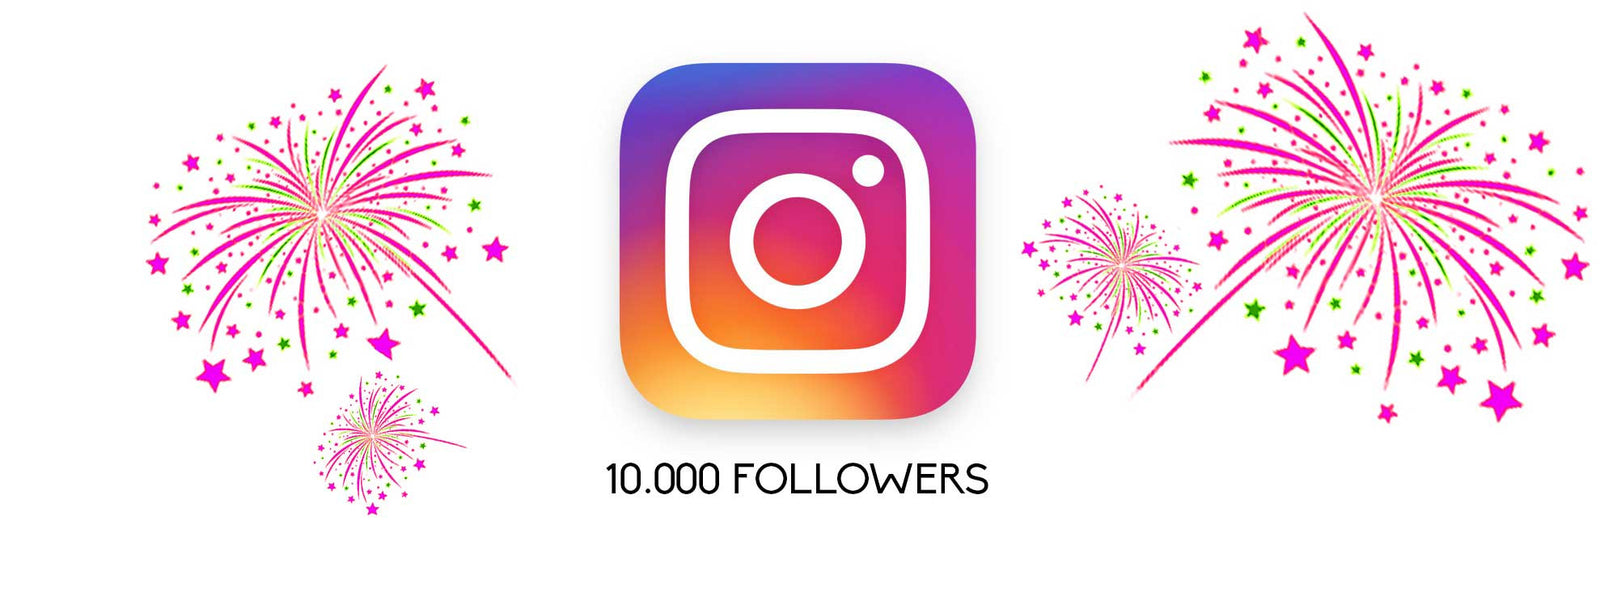  - 10k instagram followers 10